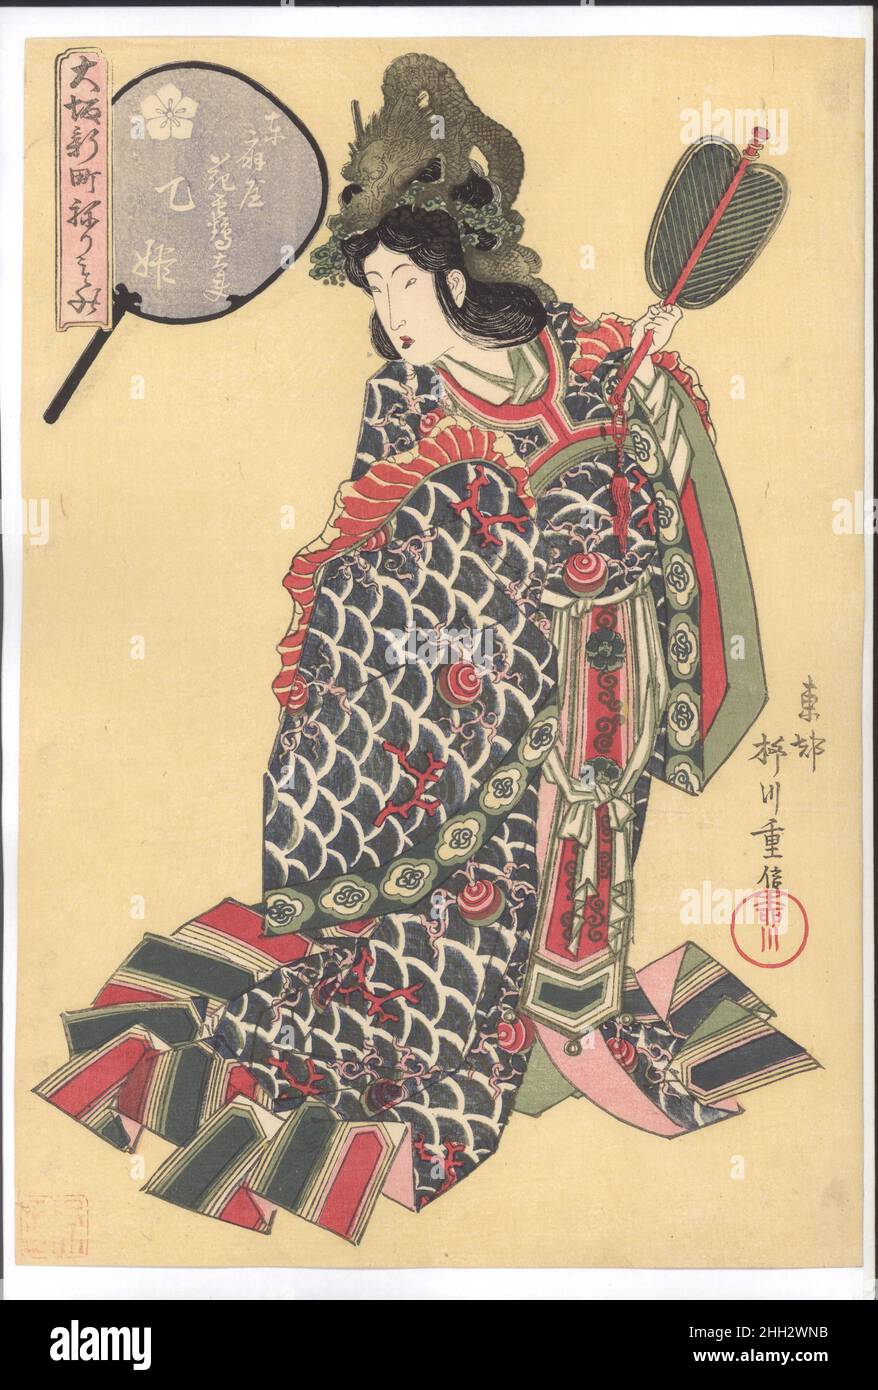 Le courtesan Hanatsuru du Higashiōgiya brithel comme le Dragon Princess Otohime, de la série Costume Parade du quartier Shinmachi à Osaka (Ōsaka Shinmachi nerimono) 1822 Yanagawa Shigenobu 柳川重信 le courtesan Hanatsuru du Higashi Ōgiya brithel est élégamment garé comme la princesse du Dragon Palace (Ryūgū Otohime)Pour un défilé de costumes qui a eu lieu à l'été 1822 dans les quartiers sous licence de Shinmachi à Osaka.Sa couronne est formée comme un dragon spiralé, elle saisit un ventilateur dans une main, et ses robes fabuleuses sont décorées avec un motif de vagues, de corail et de bijoux magiques.En général, refaites Banque D'Images